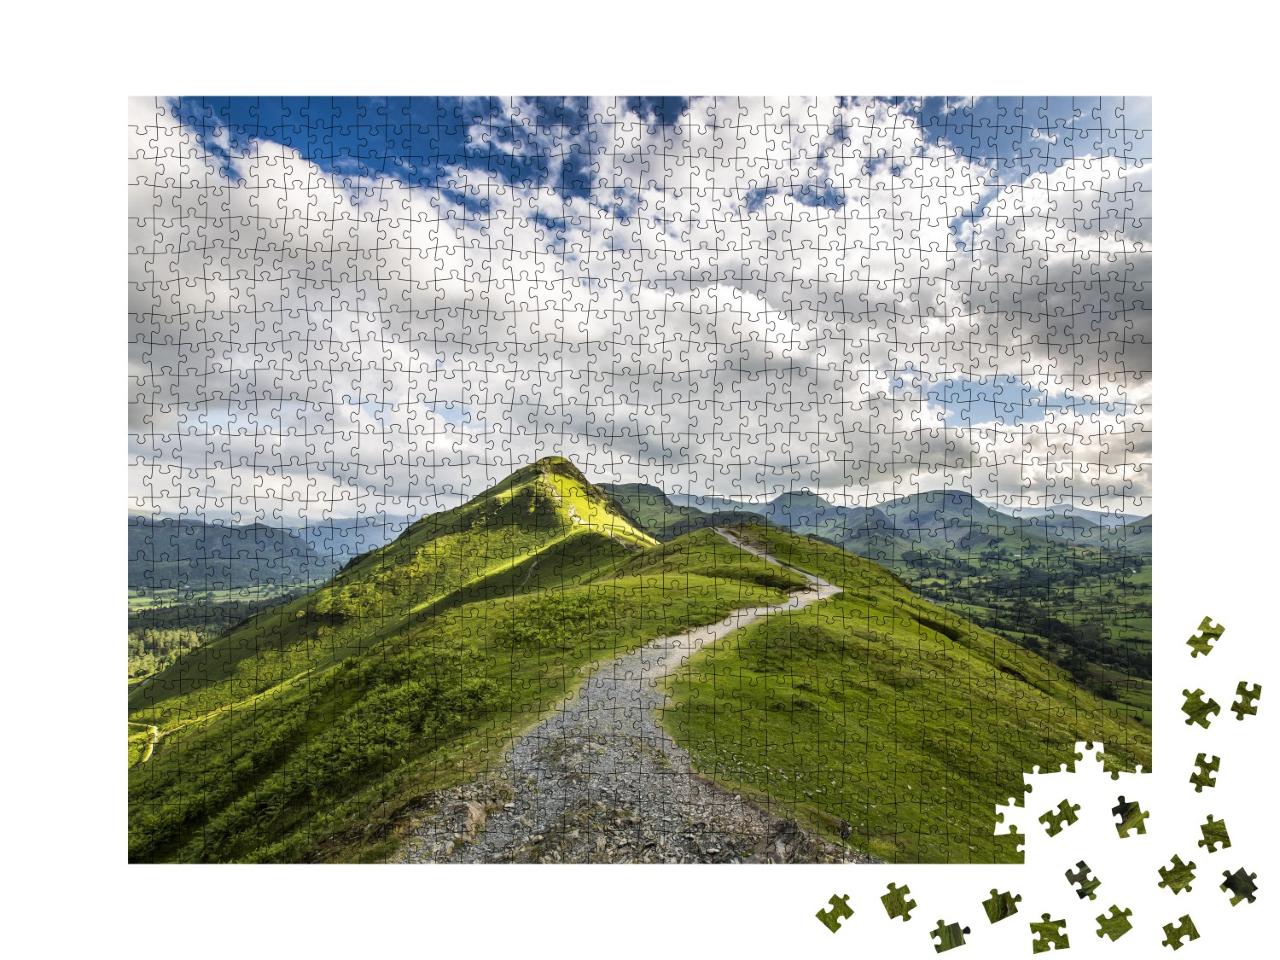 Puzzle de 1000 pièces « Vue sur le sommet de la colline de Catbells dans le Lake District, Angleterre »